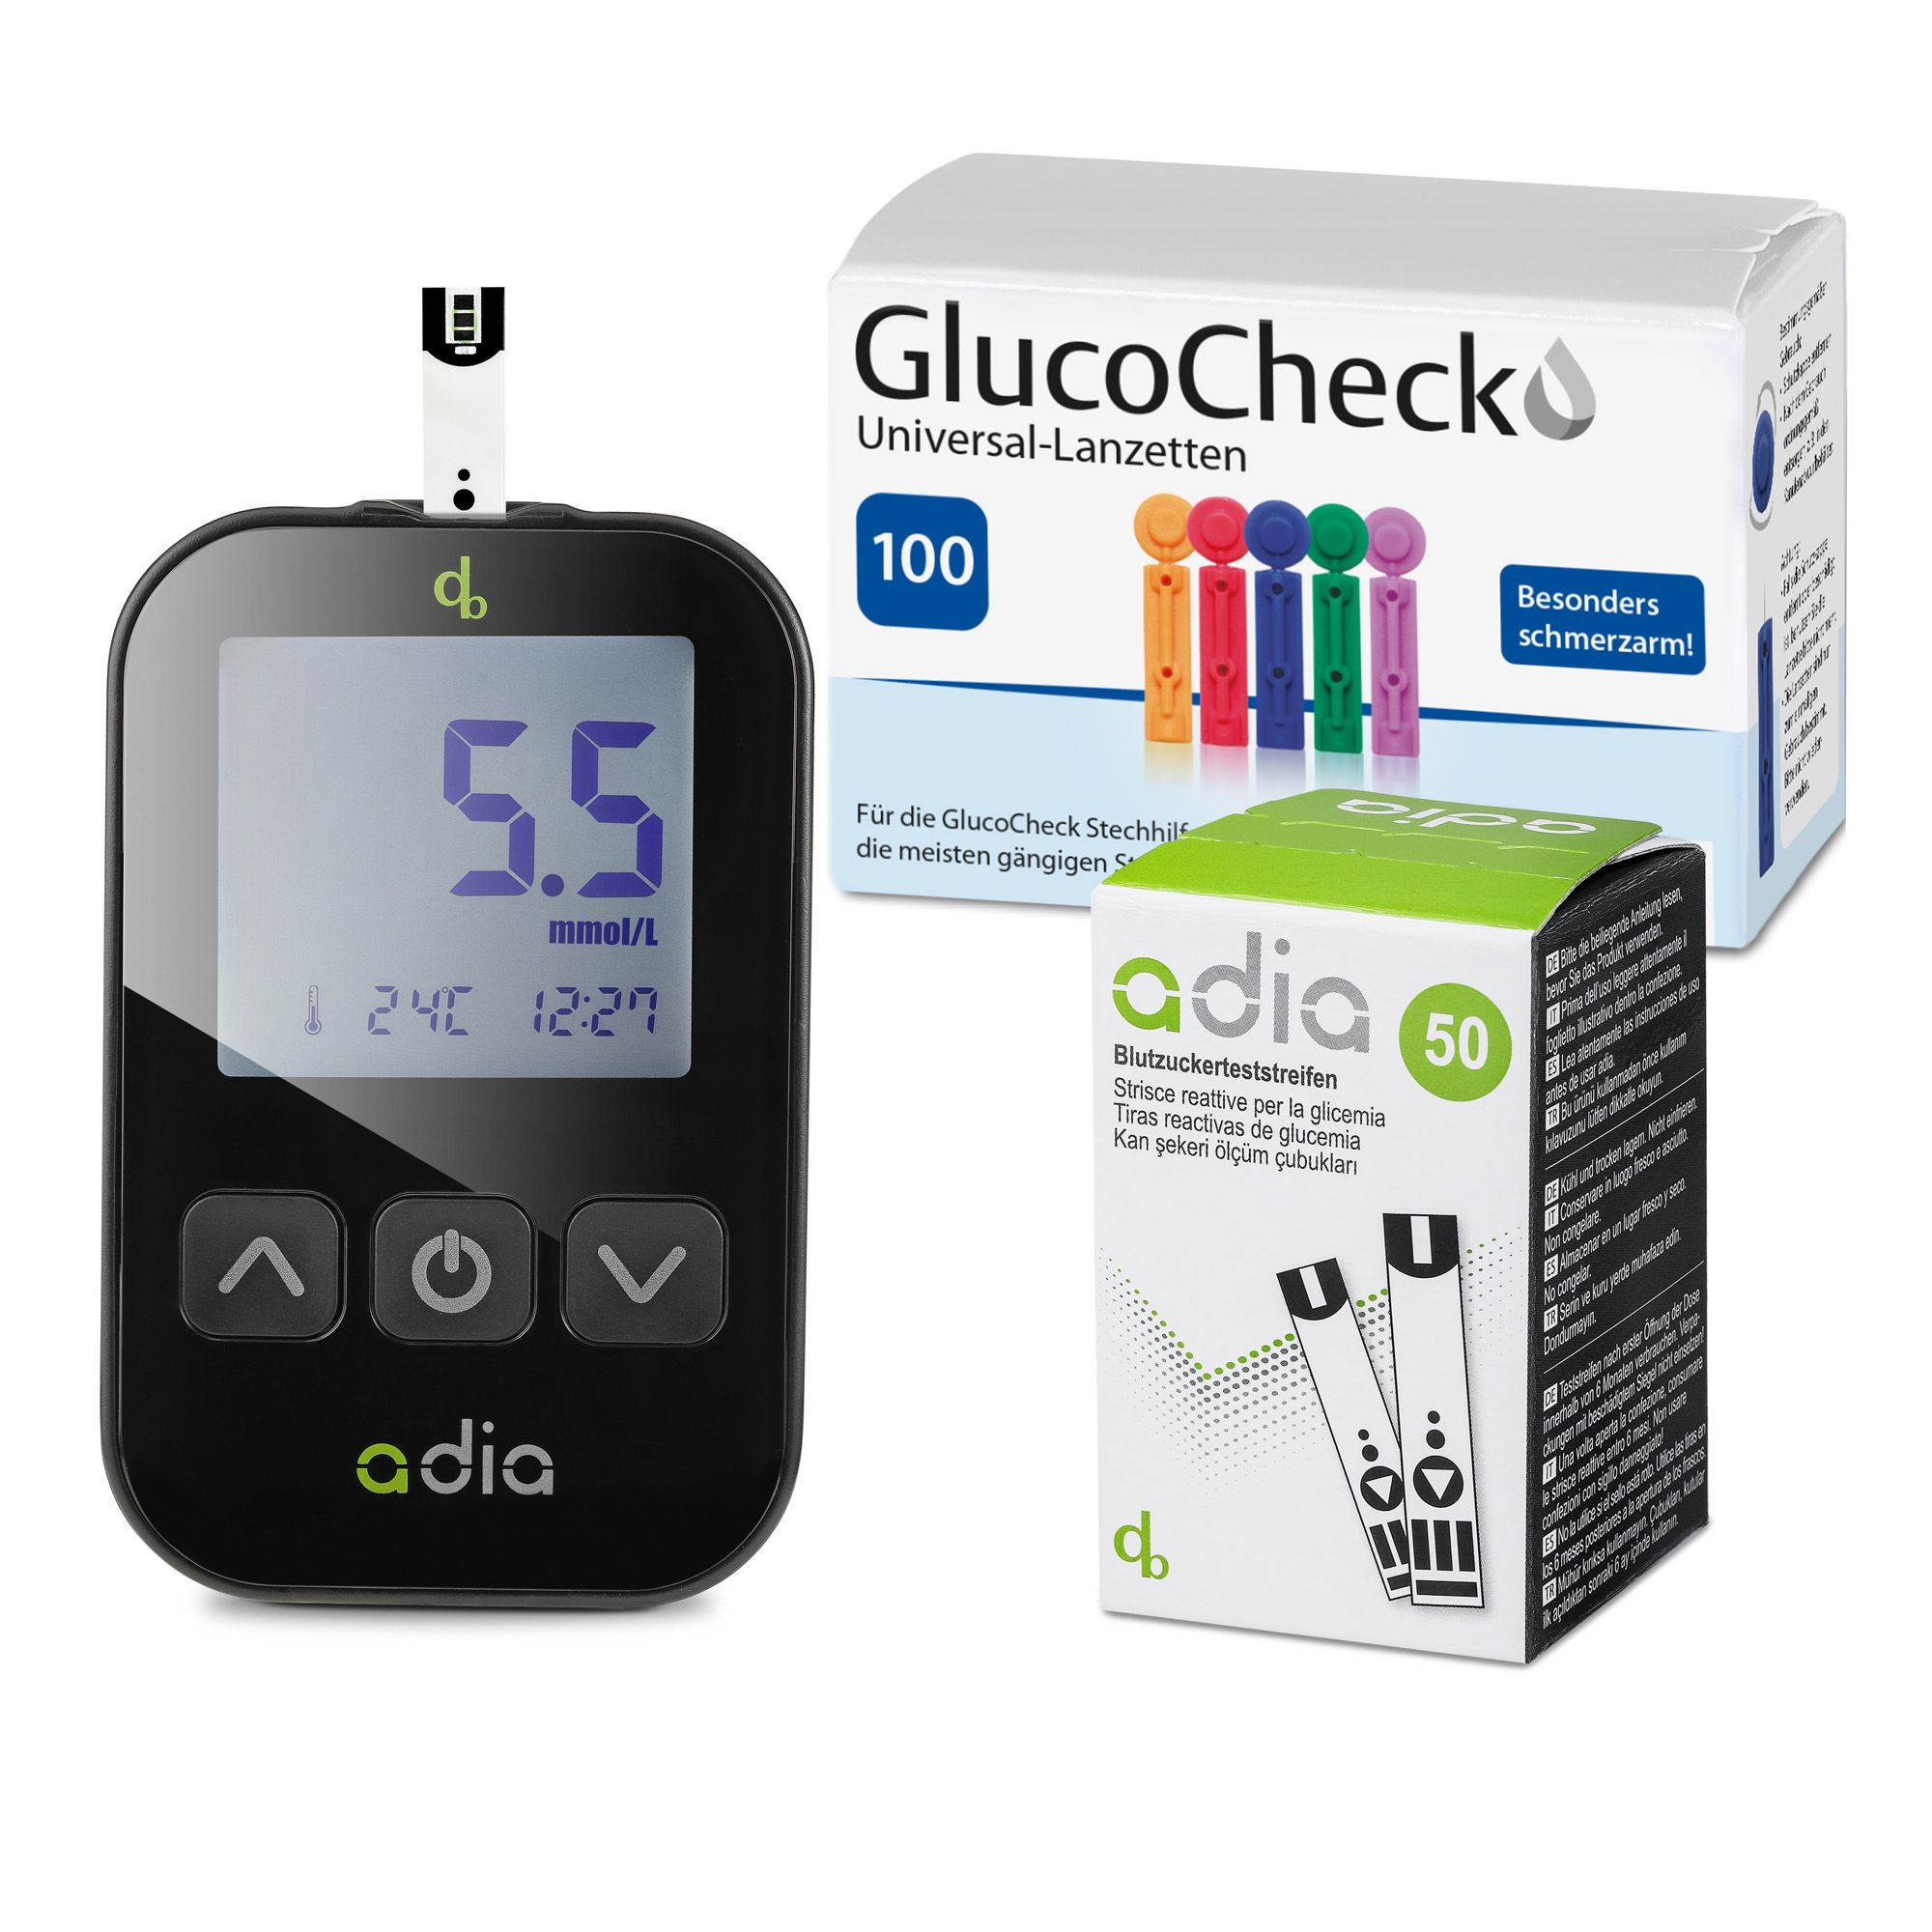 adia Blutzuckerteststreifen (60 Stück) mit Messgerät (mmol/L) und 110 Lanzetten als Komplett-Set